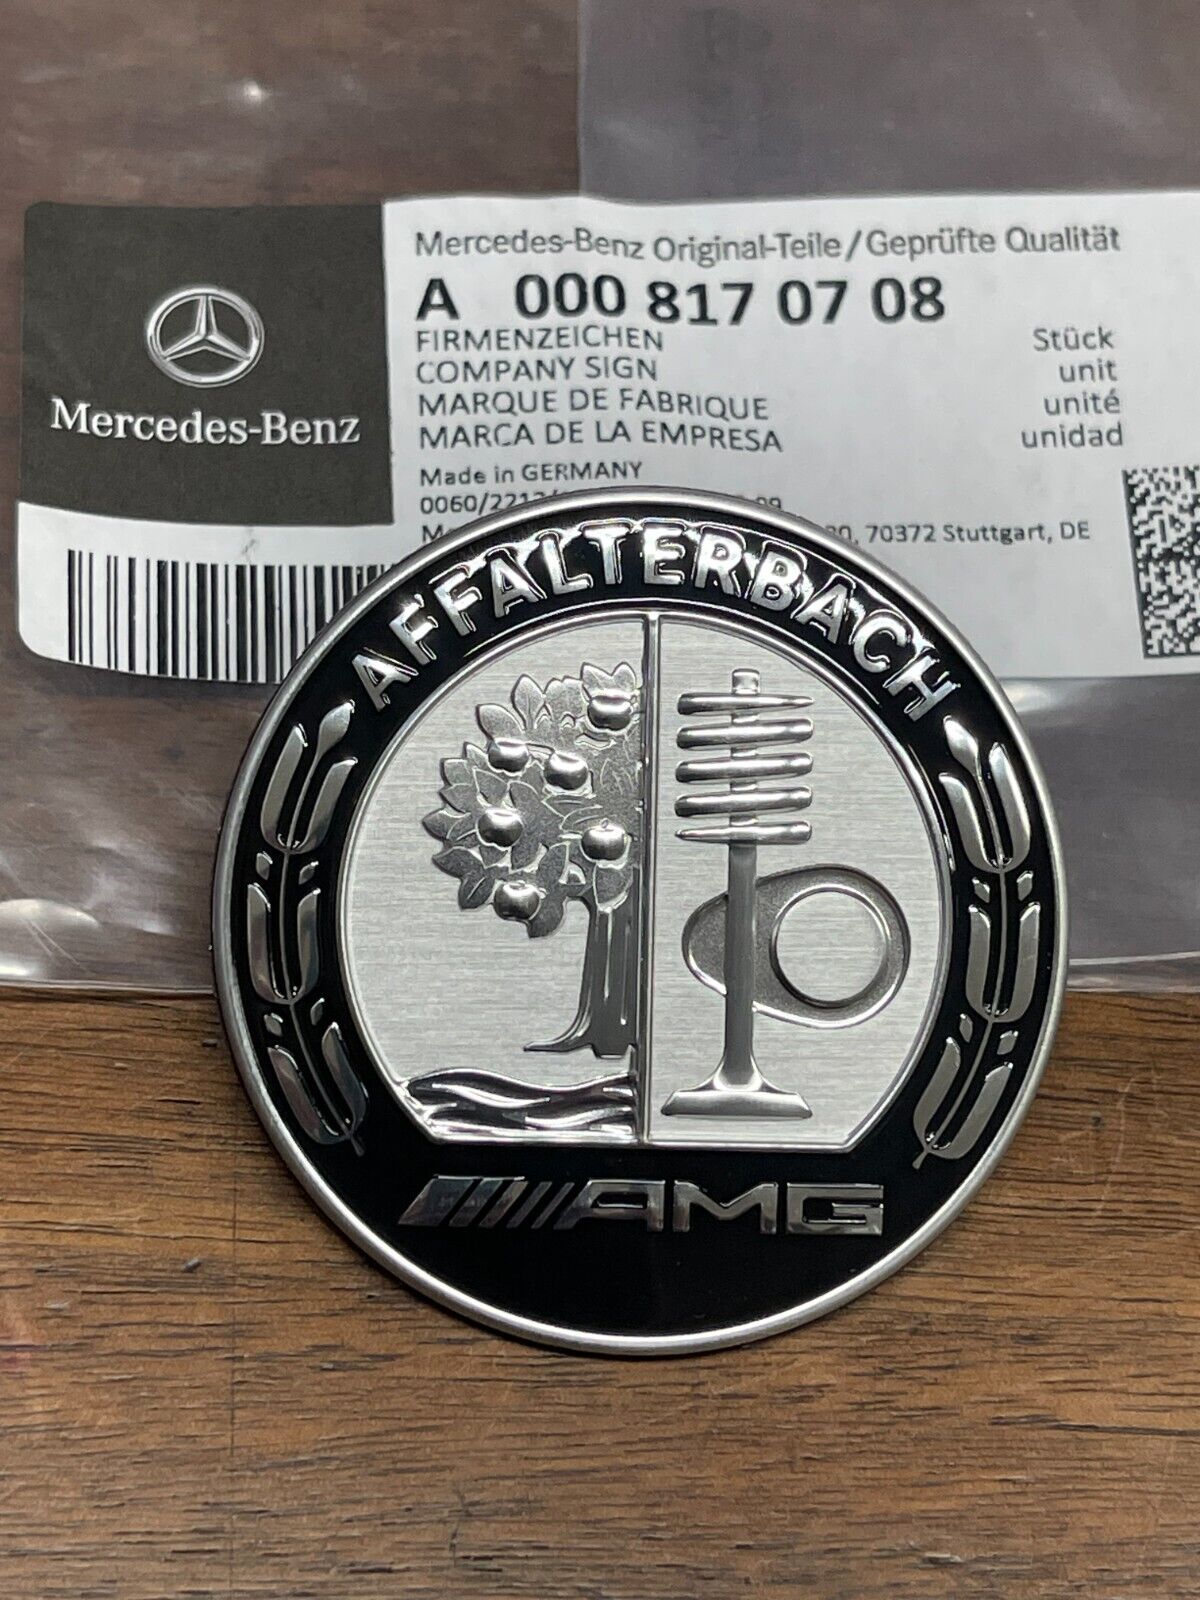 Genuine Mercedes AMG Emblem Black Bonnet W206 S206 C-Class A0008170708 C63 S E